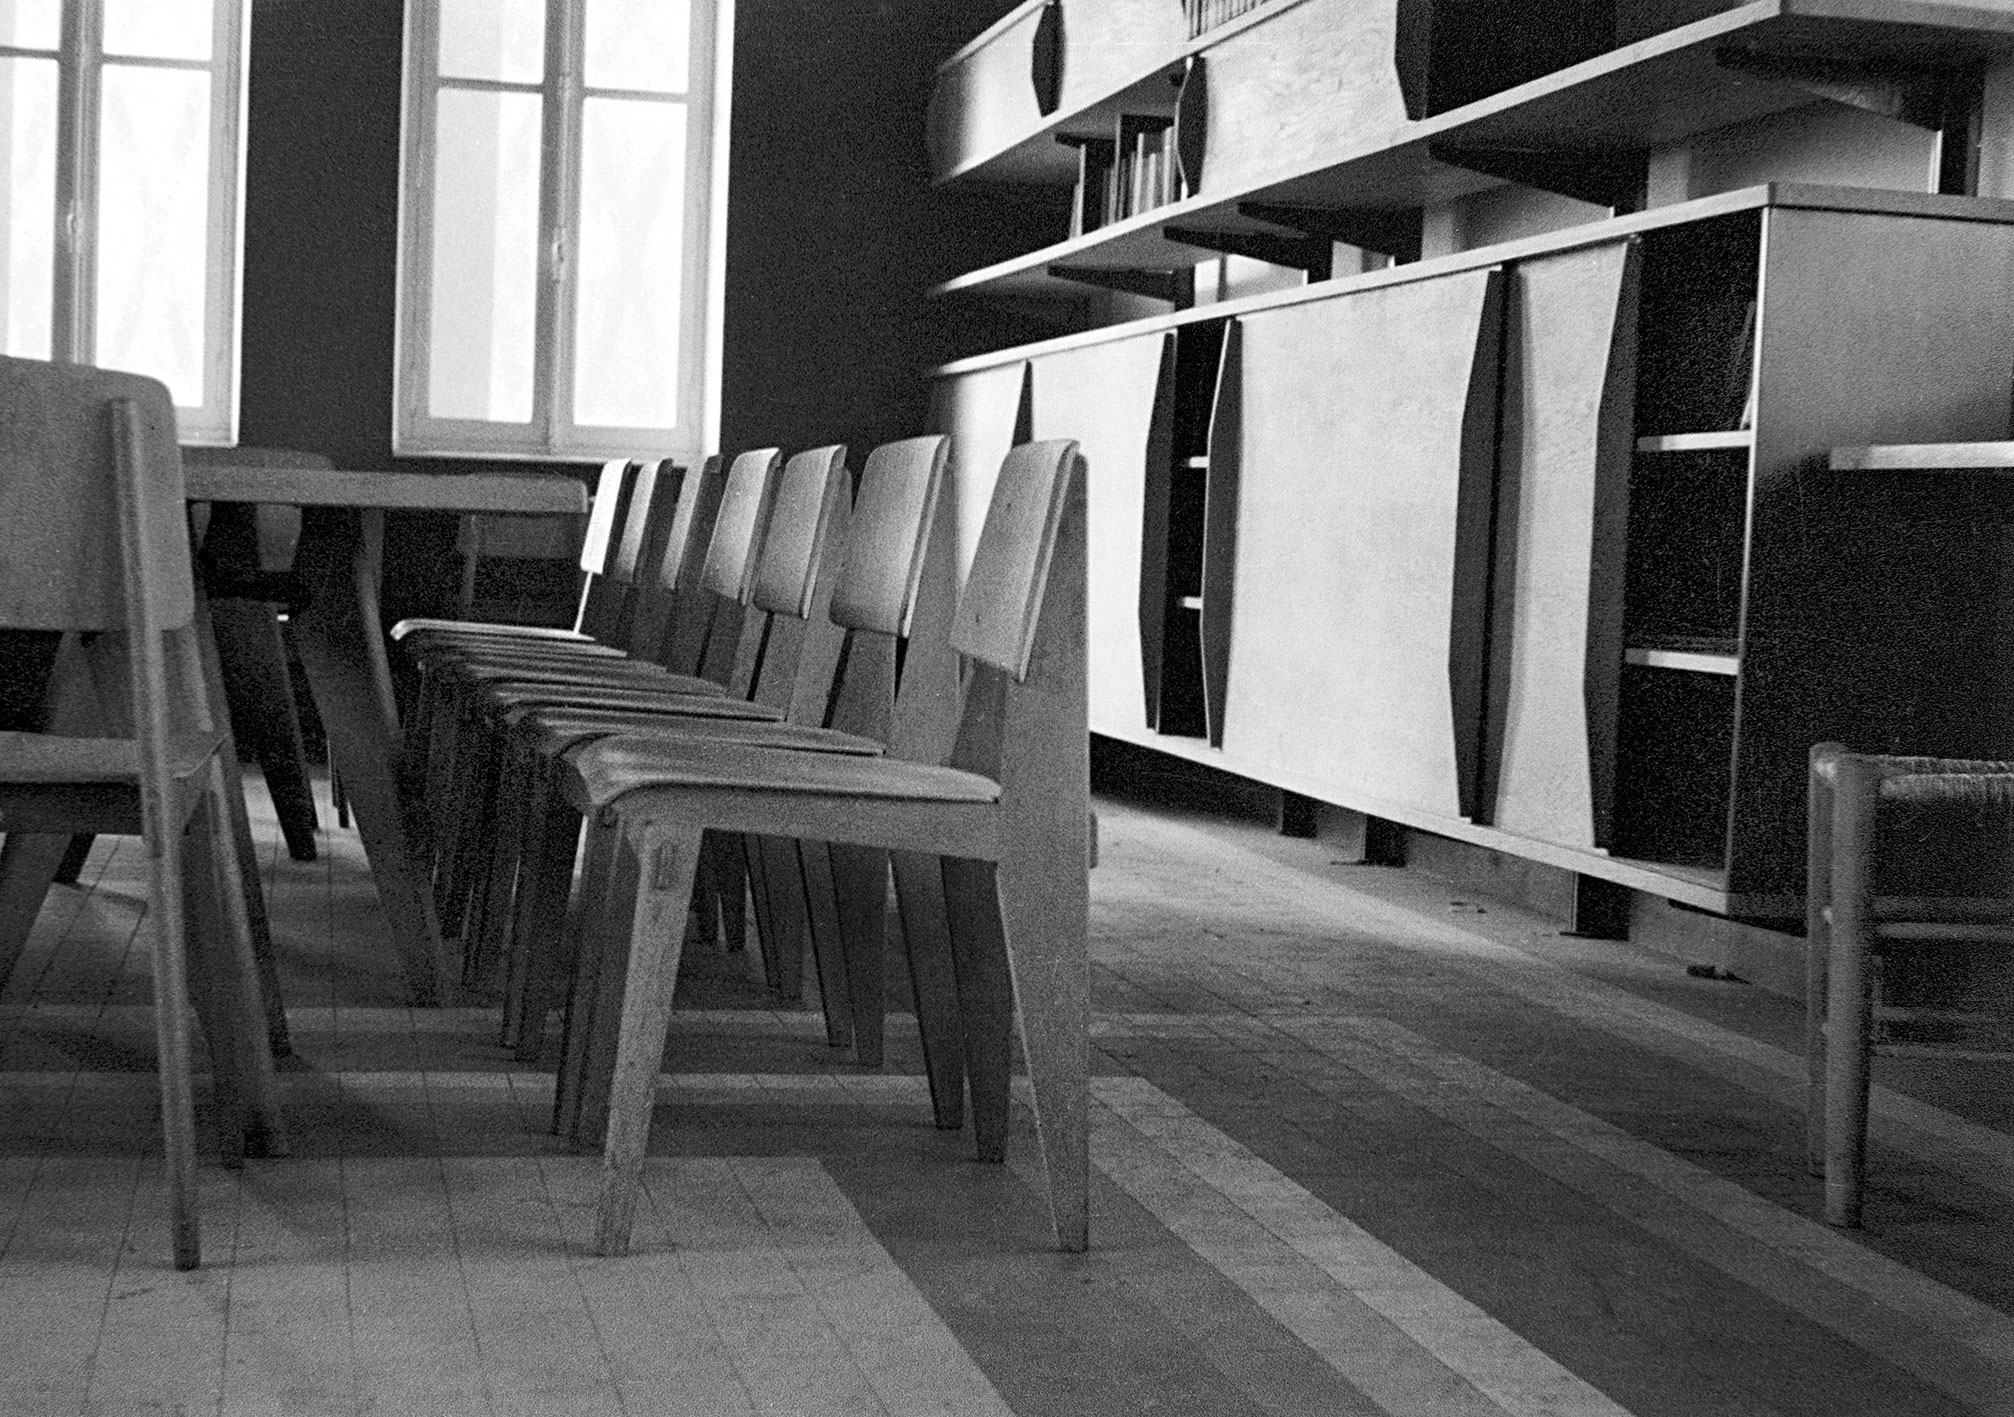 Foyer du personnel de l’imprimerie Berger-Levrault, Nancy, c. 1942. Ensemble de chaises Tout Bois et meubles de rangement suspendus sur crémaillères.